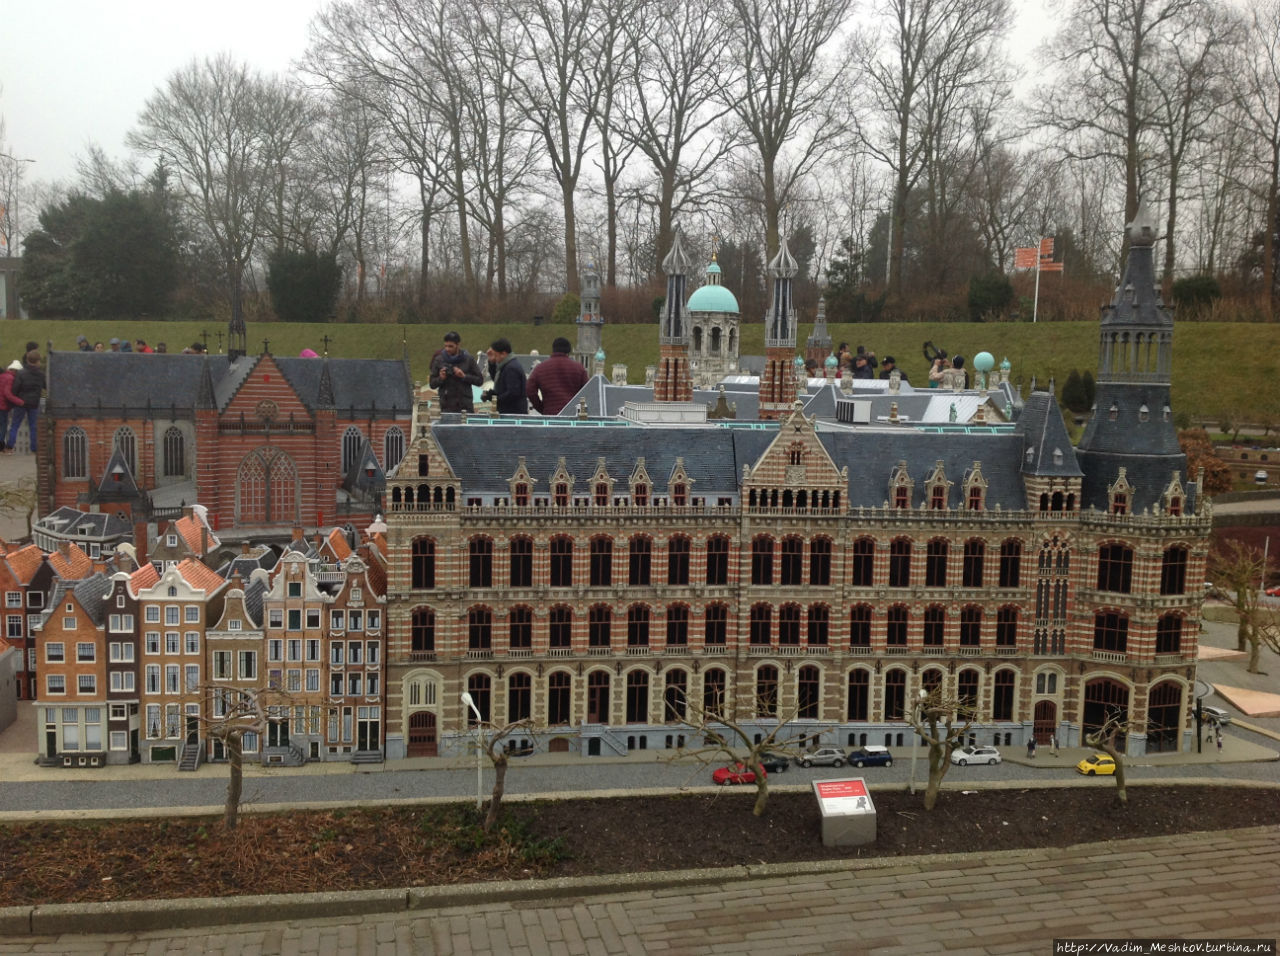 Миниатюрные экспонаты парка Мадуродам в Гааге. Гаага, Нидерланды